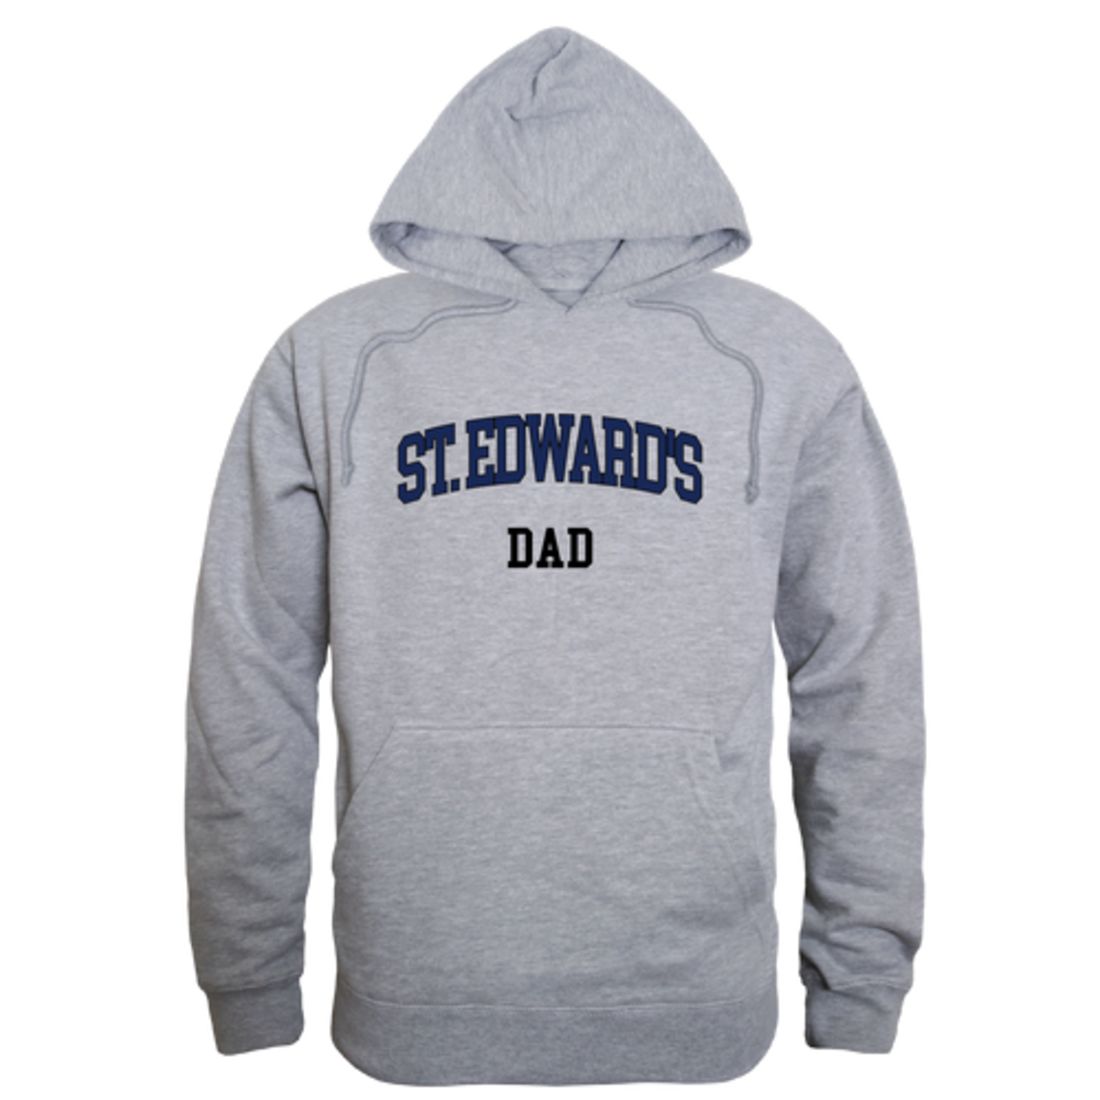 St.-Edward's-University-Hilltoppers-Dad-Fleece-Hoodie-Sweatshirts